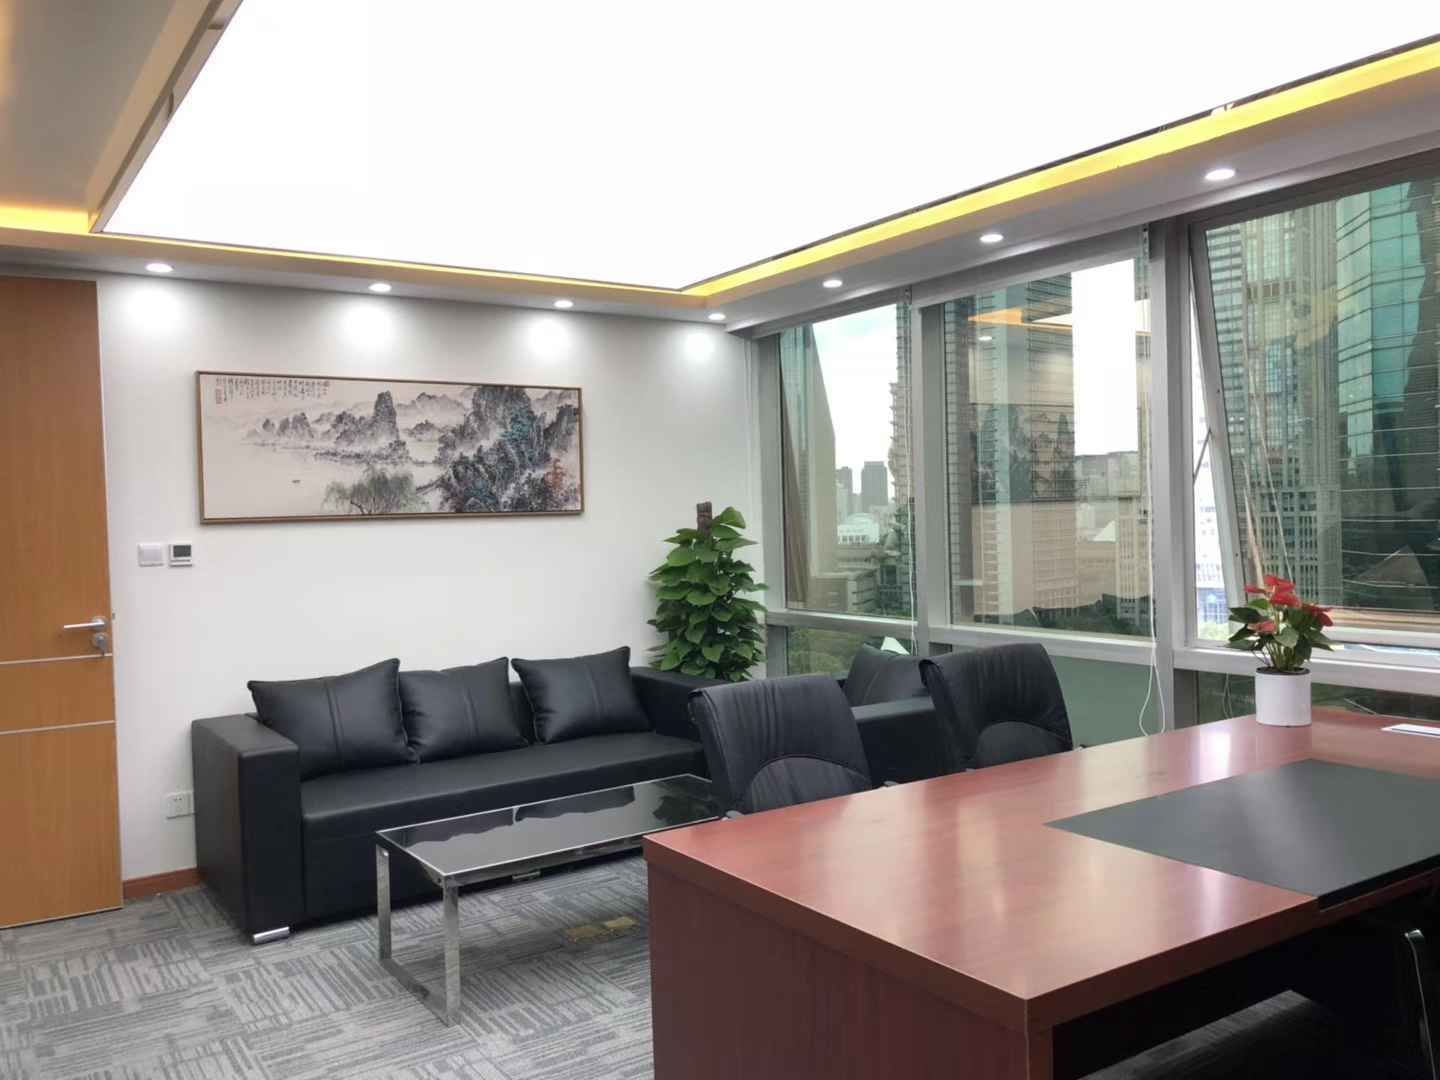 良友大厦（上海浦东）八佰伴 良友大厦（上海浦东） 160平米 精装修